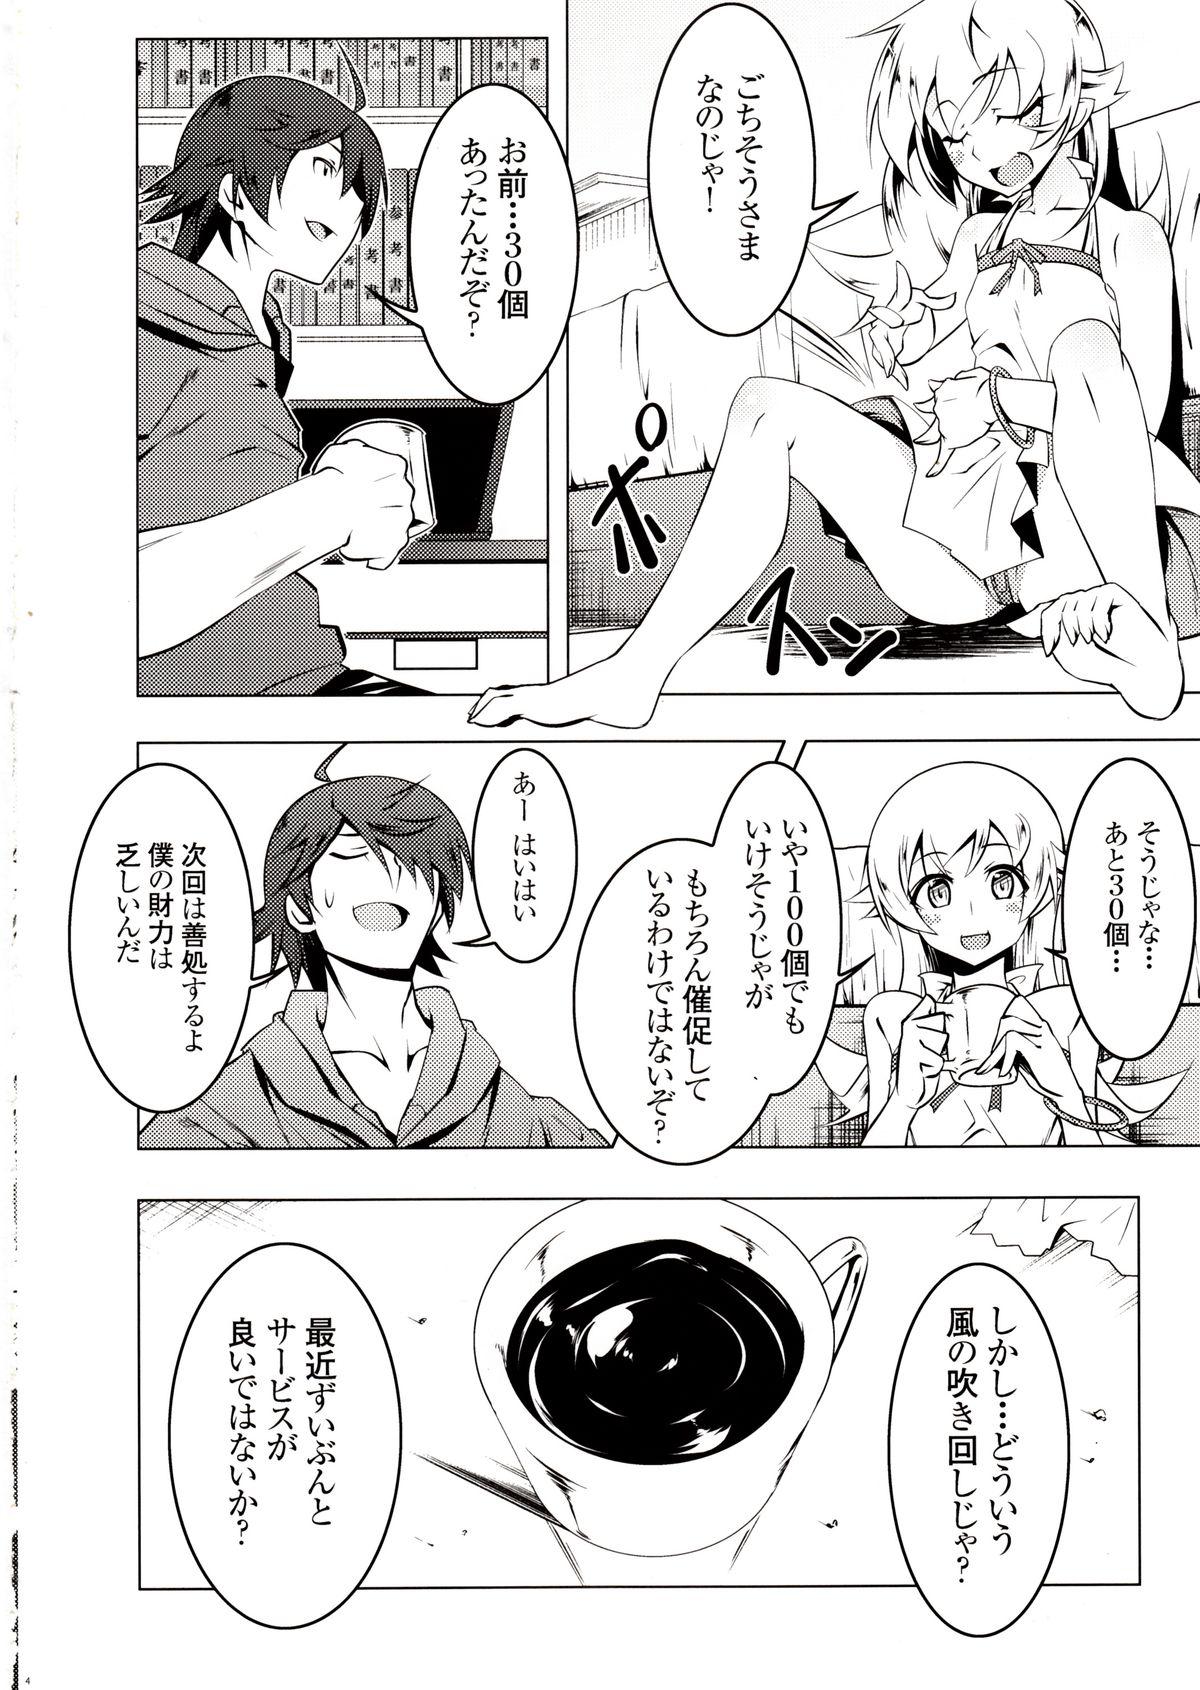 Gang Bang Netoraregatari Ni - Bakemonogatari Lesbian Sex - Page 3